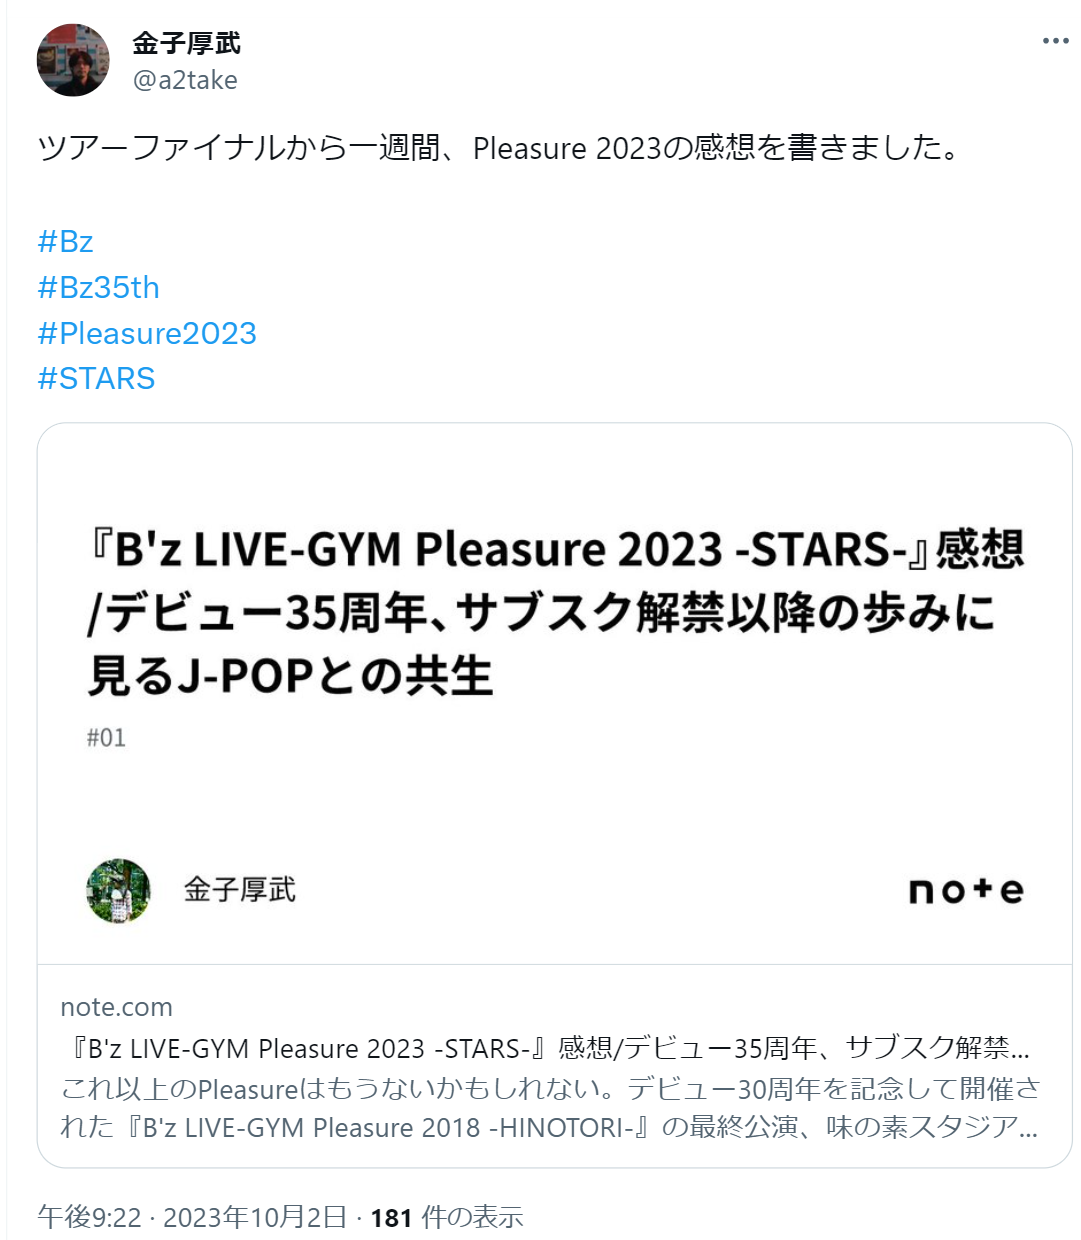 金子厚武氏が『B'z LIVE-GYM Pleasure 2023 -STARS-』の感想を綴ったnote記事のXポスト